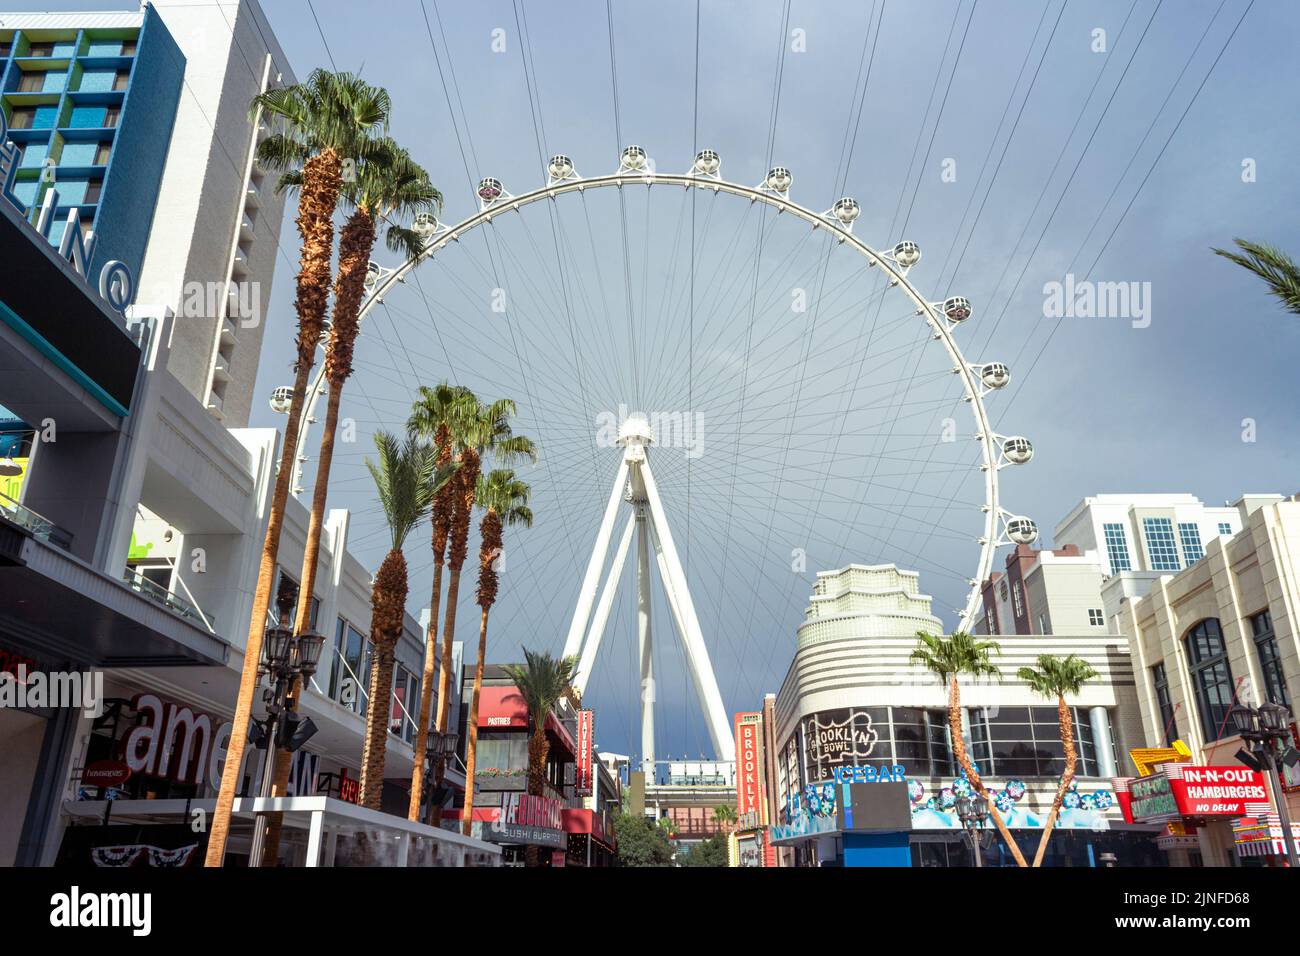 Goditi le viste mozzafiato della ruota panoramica High Roller presso la LINQ Promenade di Las Vegas. Vivi oggi stesso l'emozione di questa attrazione iconica! Foto Stock